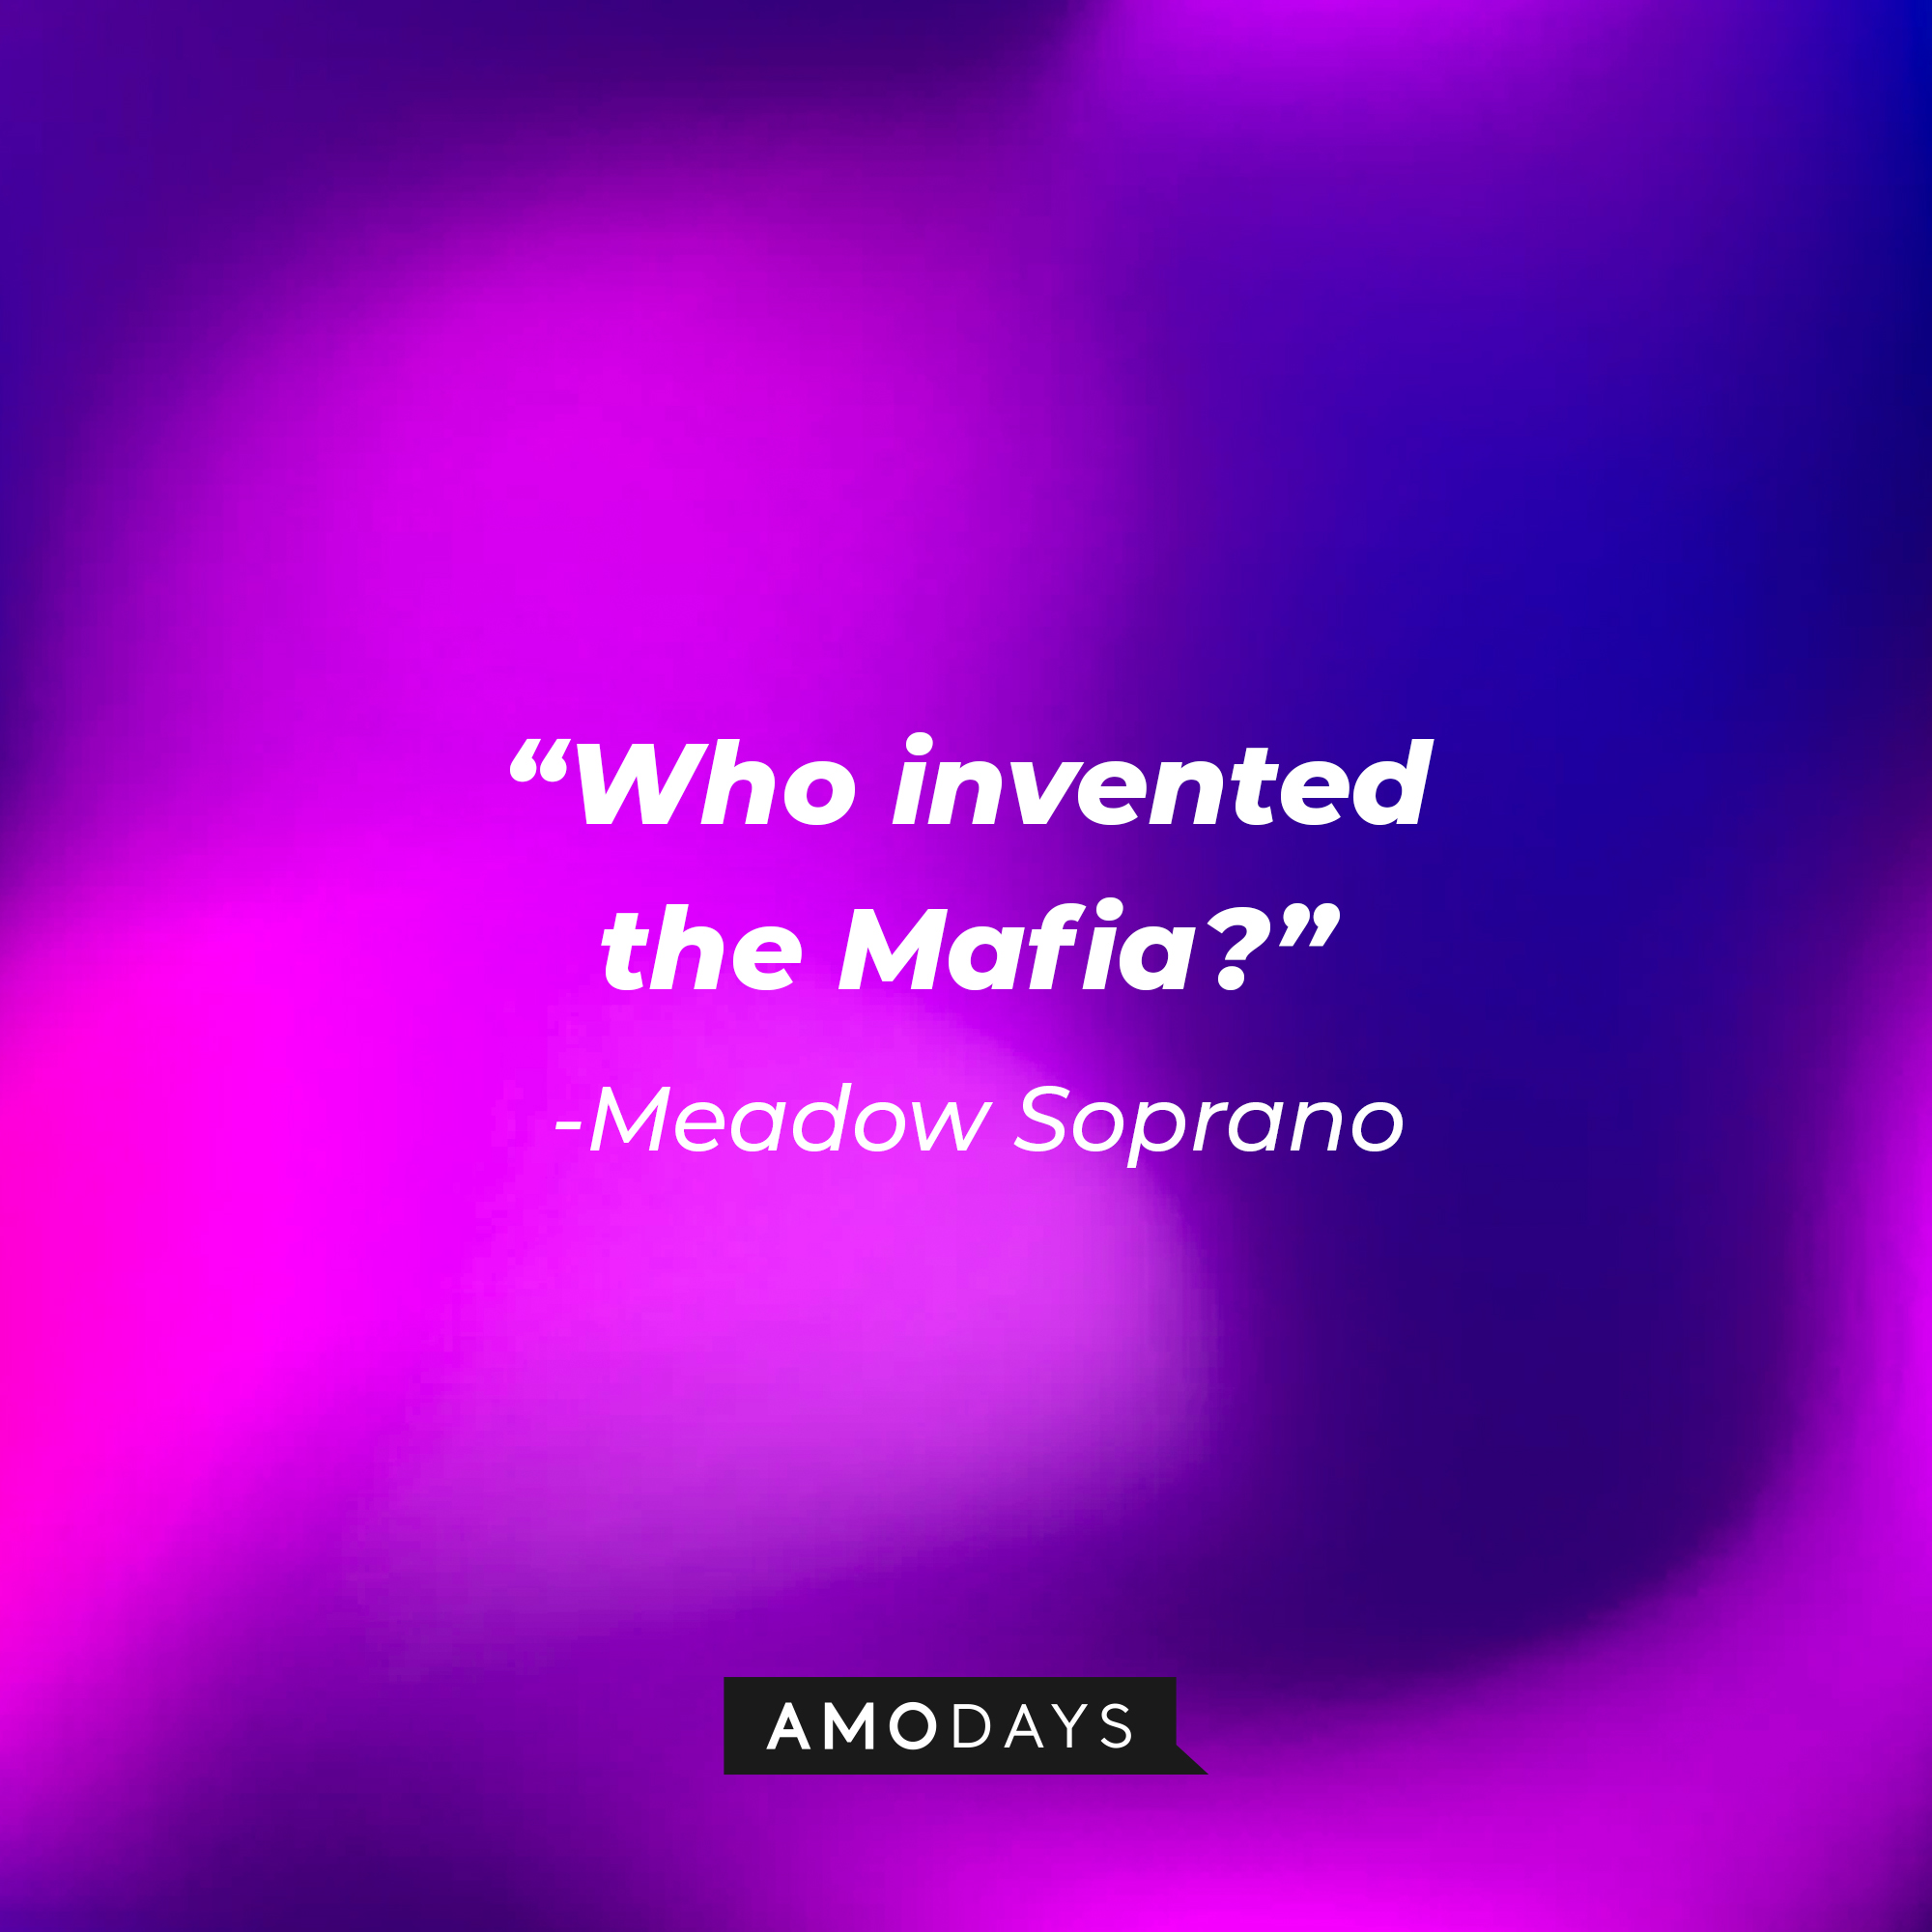 Meadow Soprano’s quote: “Who invented the Mafia?” | Source: AmoDays